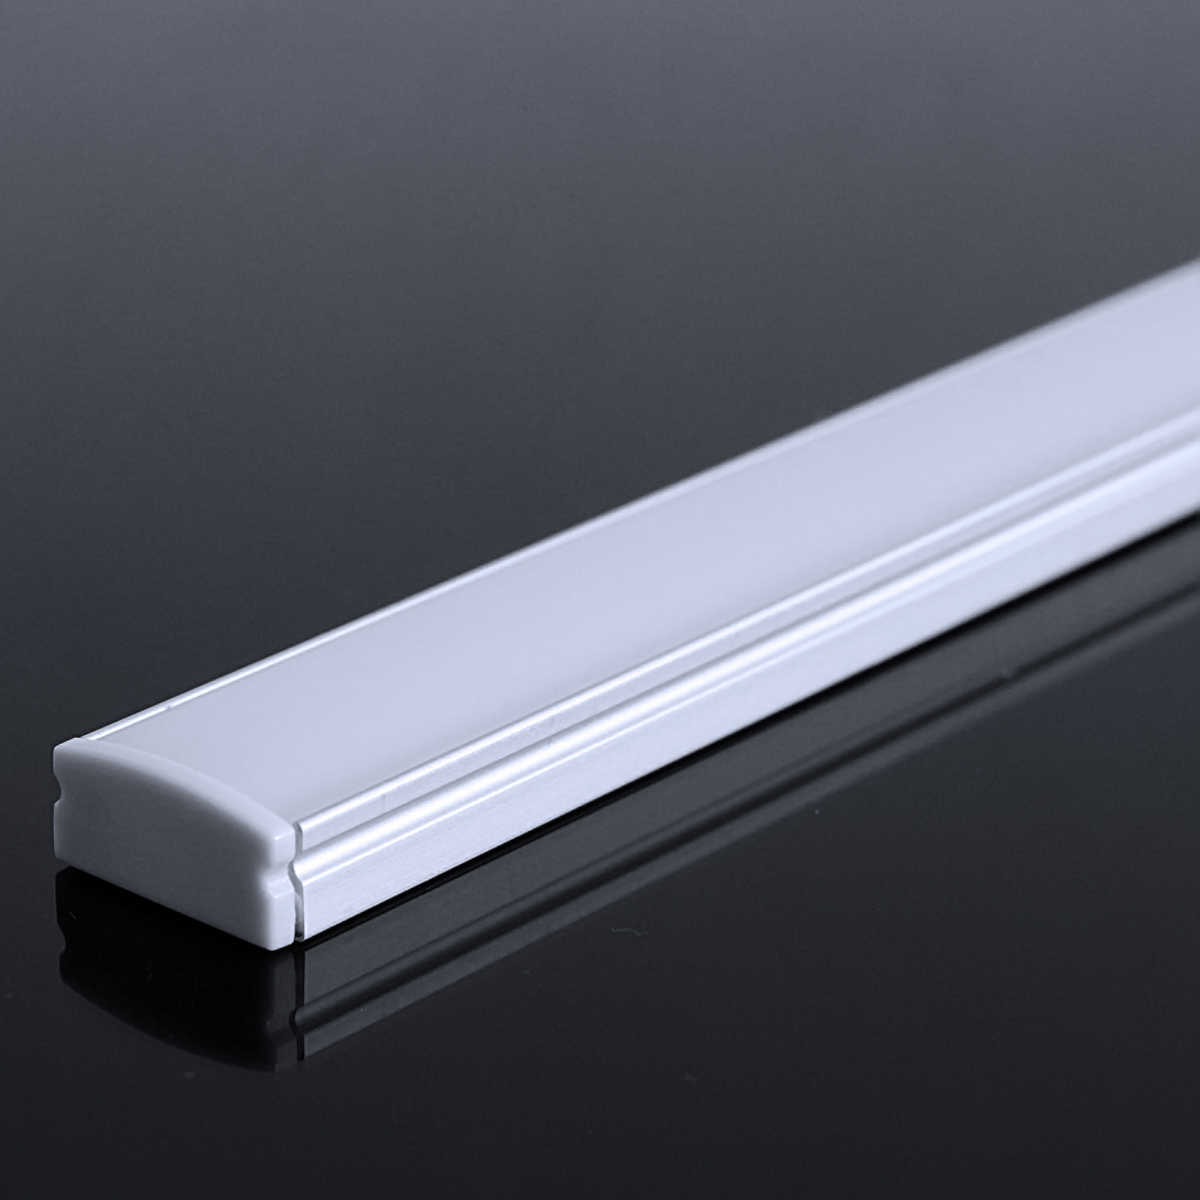 LED Flachprofil "Slim-Line" | Abdeckung diffus | Zuschnitt auf 158cm |